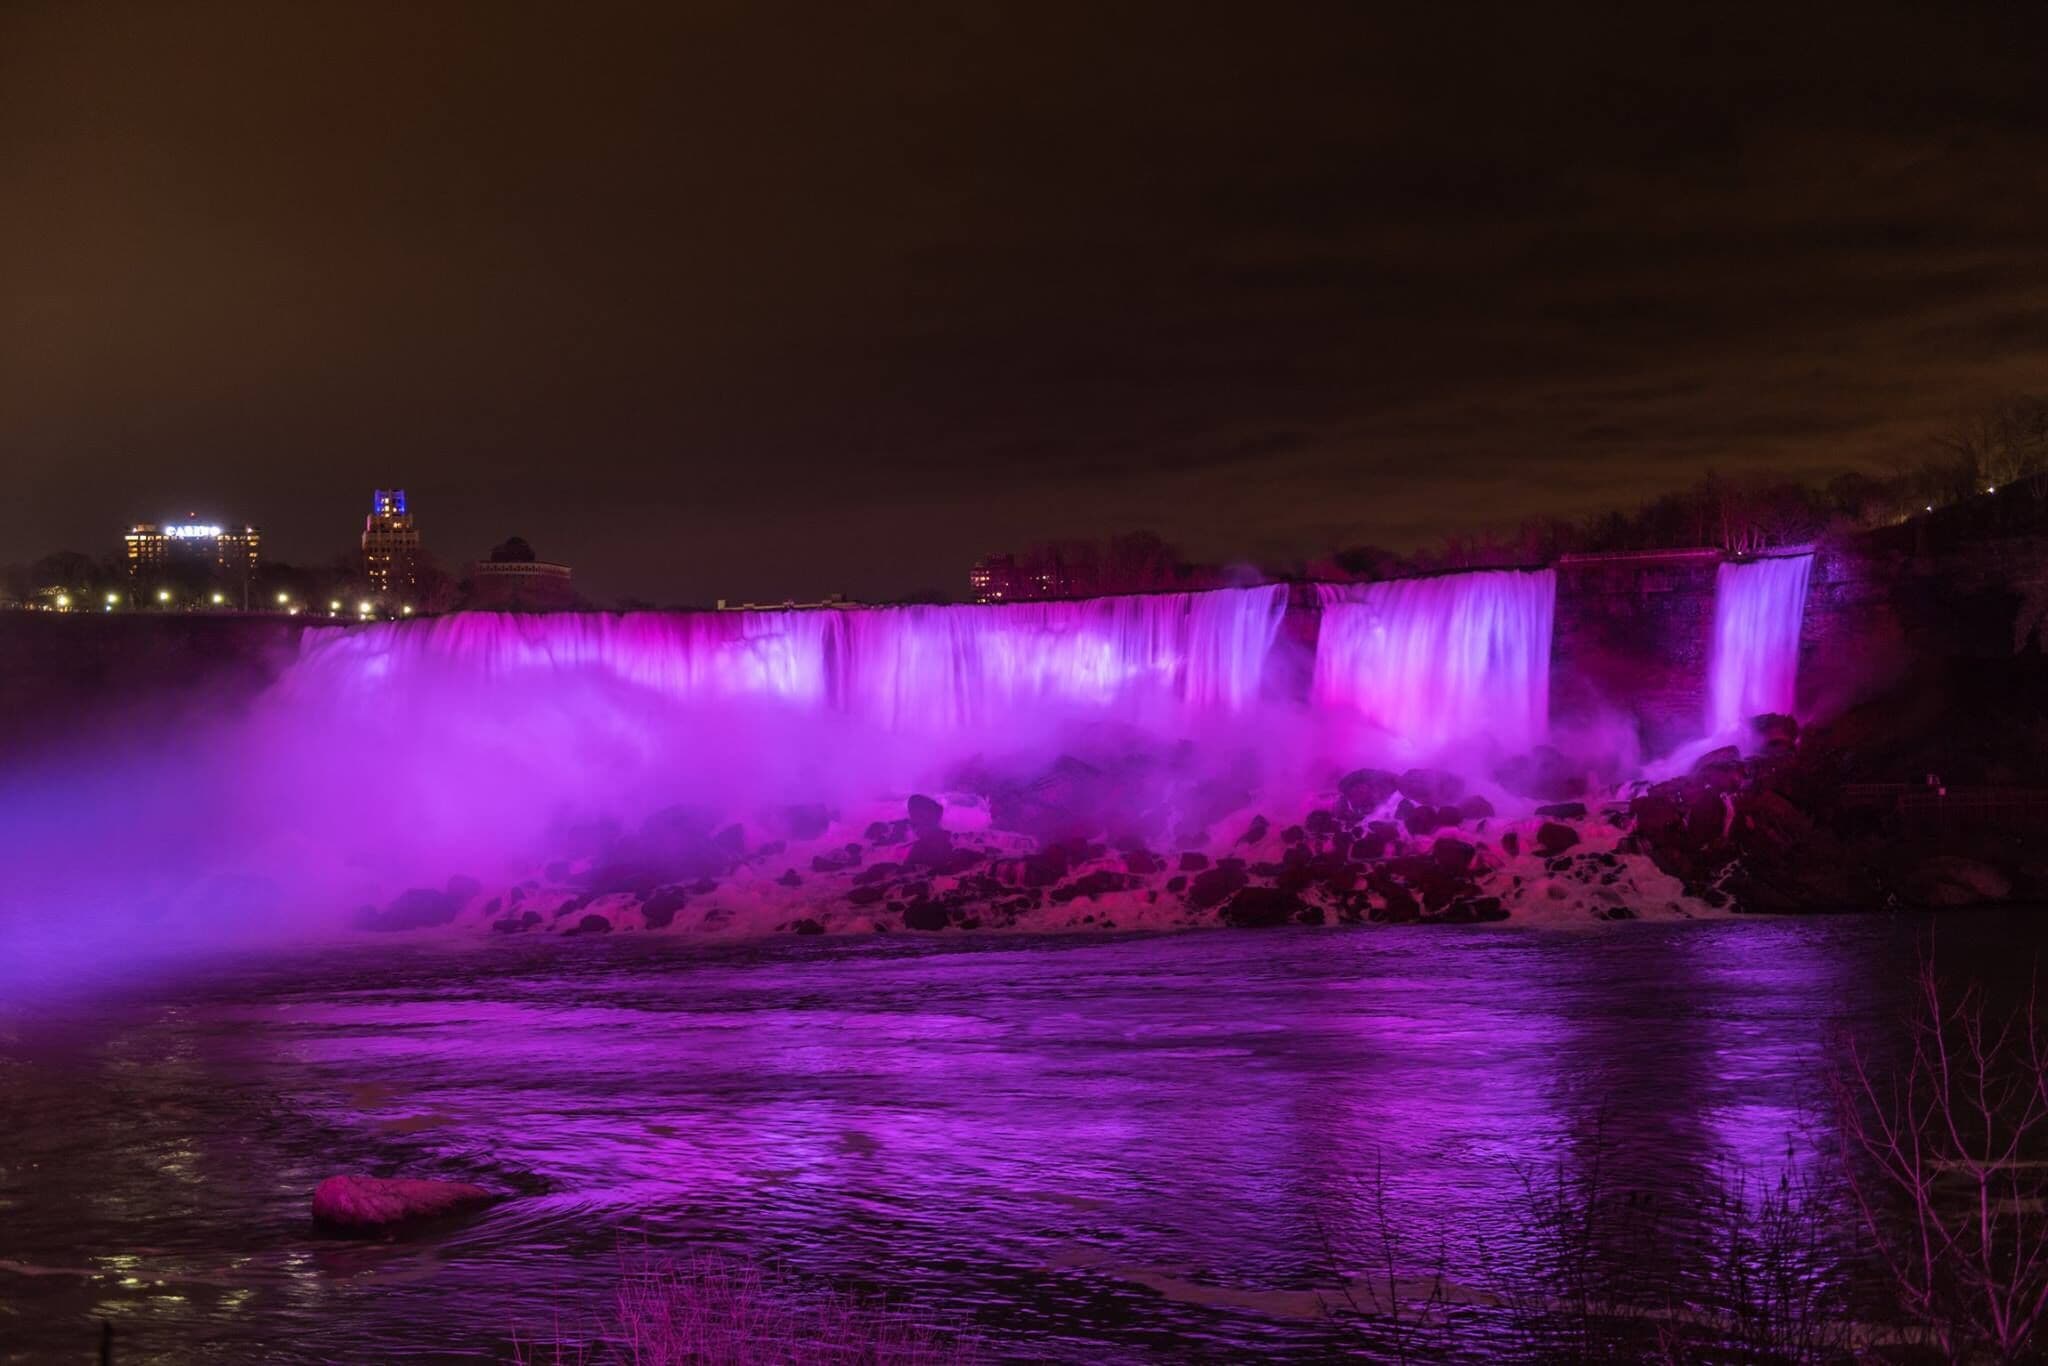 Courtyard Niagara Falls